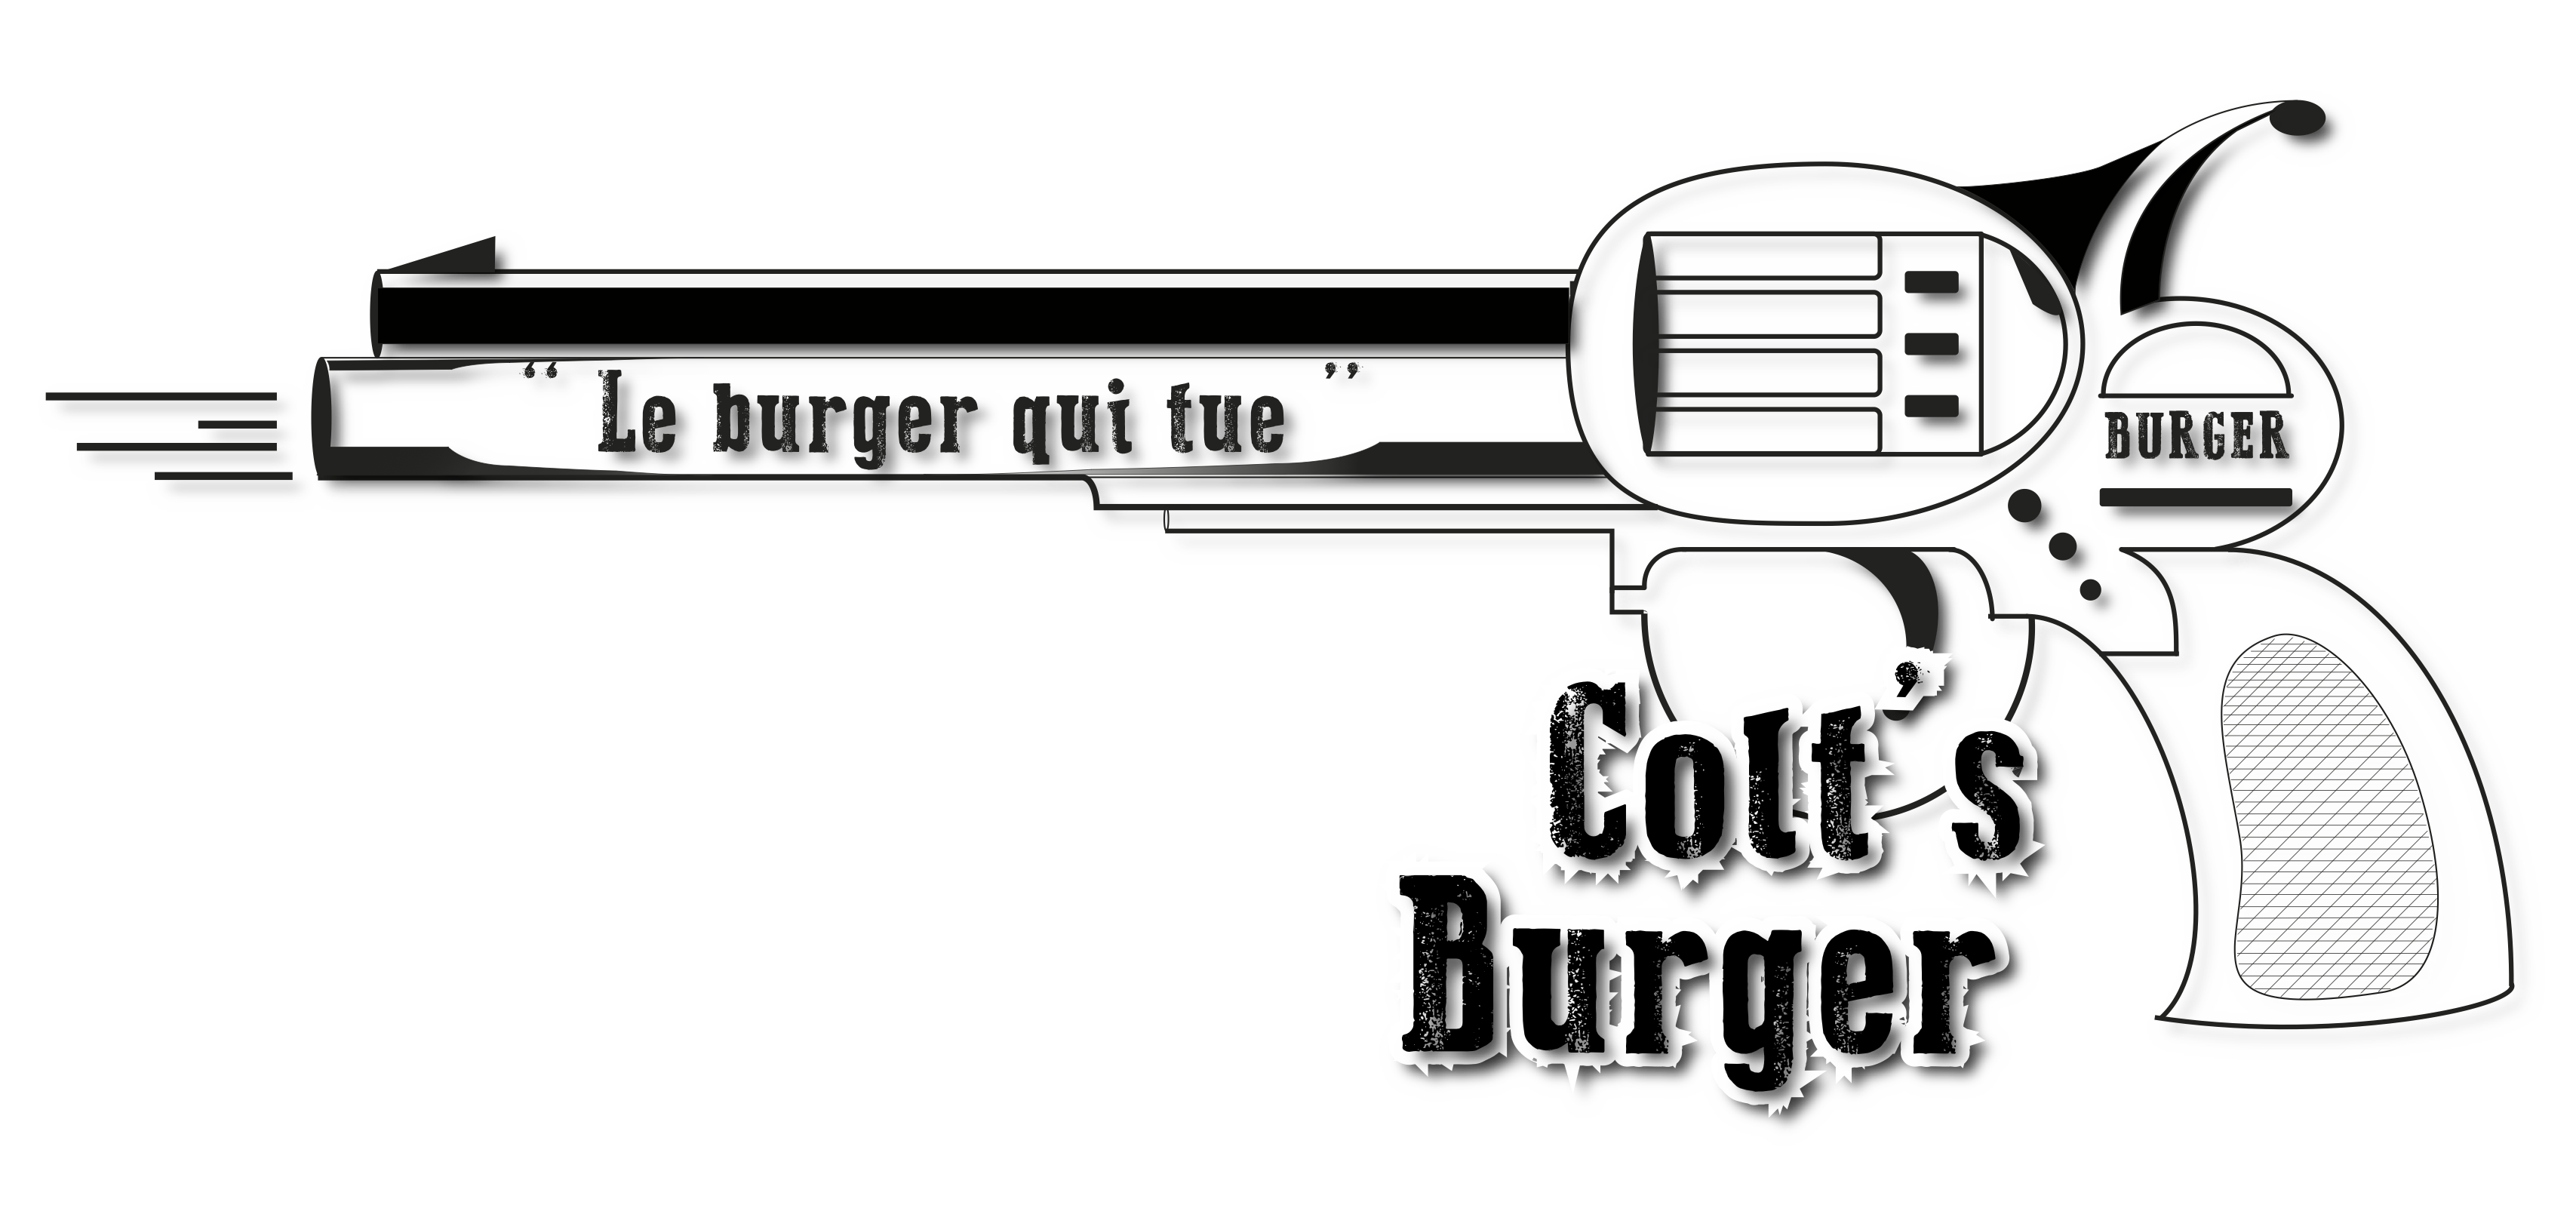 Colts burger